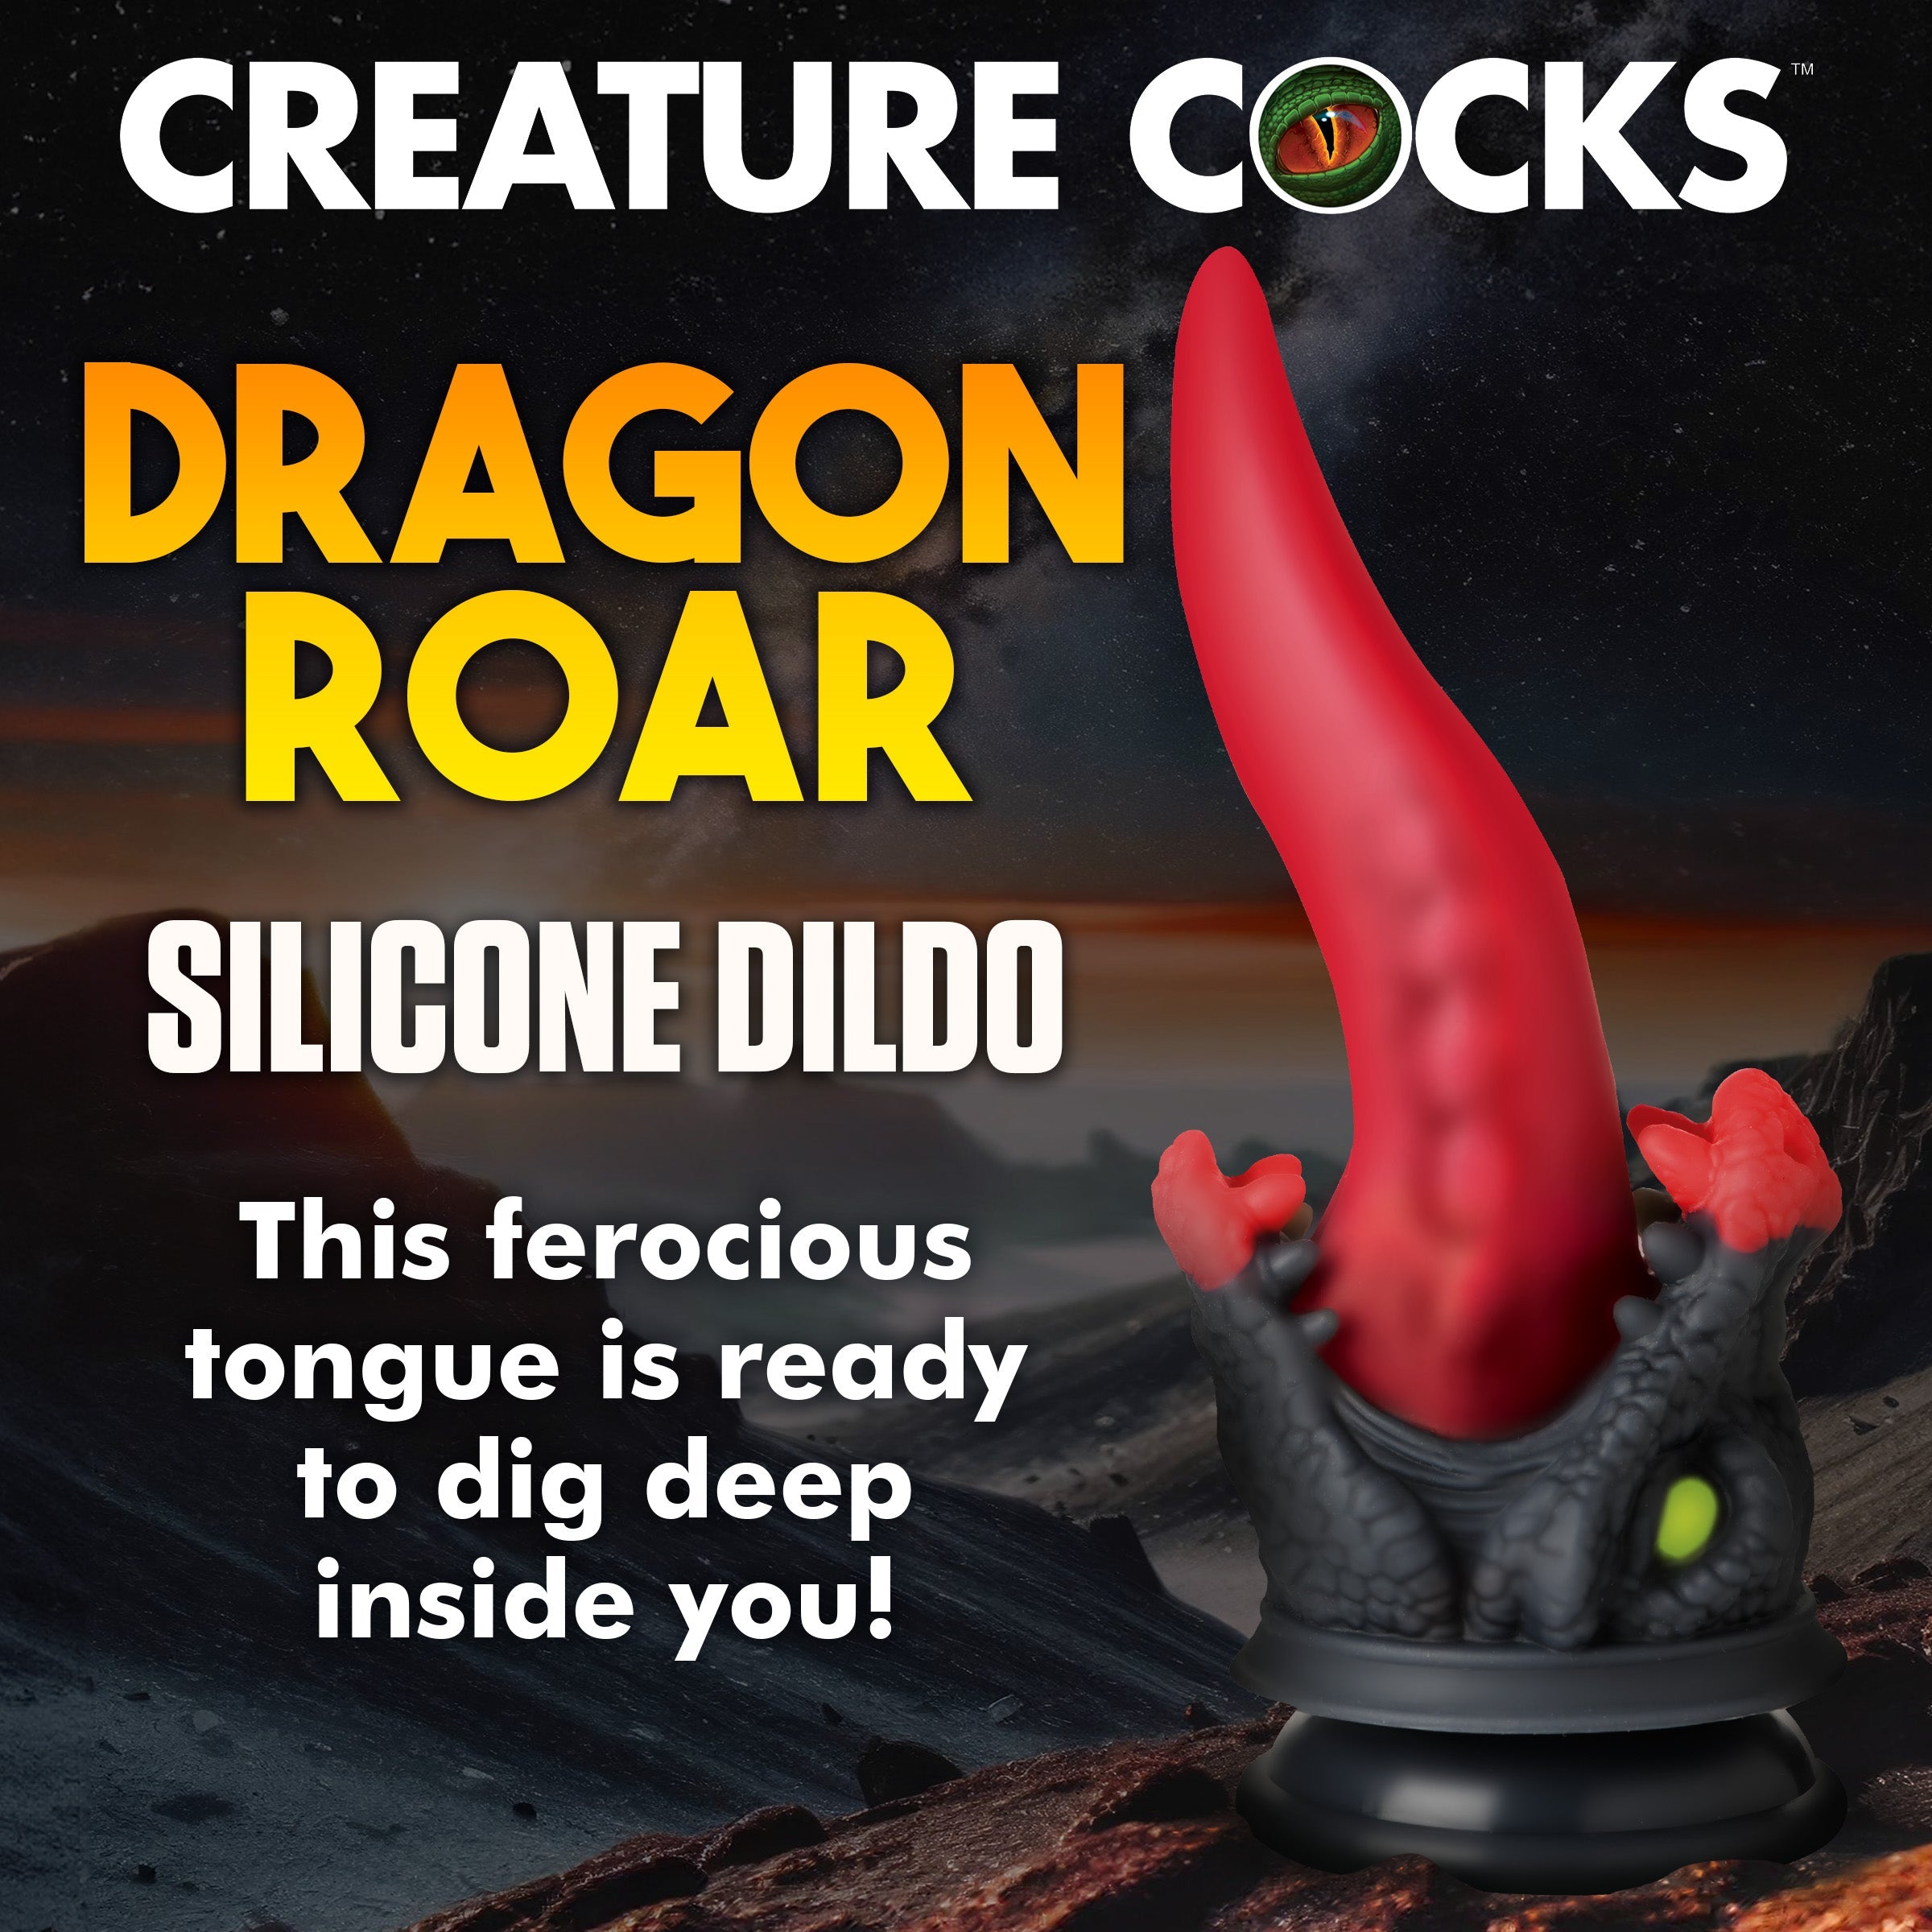 Dragon Roar Silicone Dildo